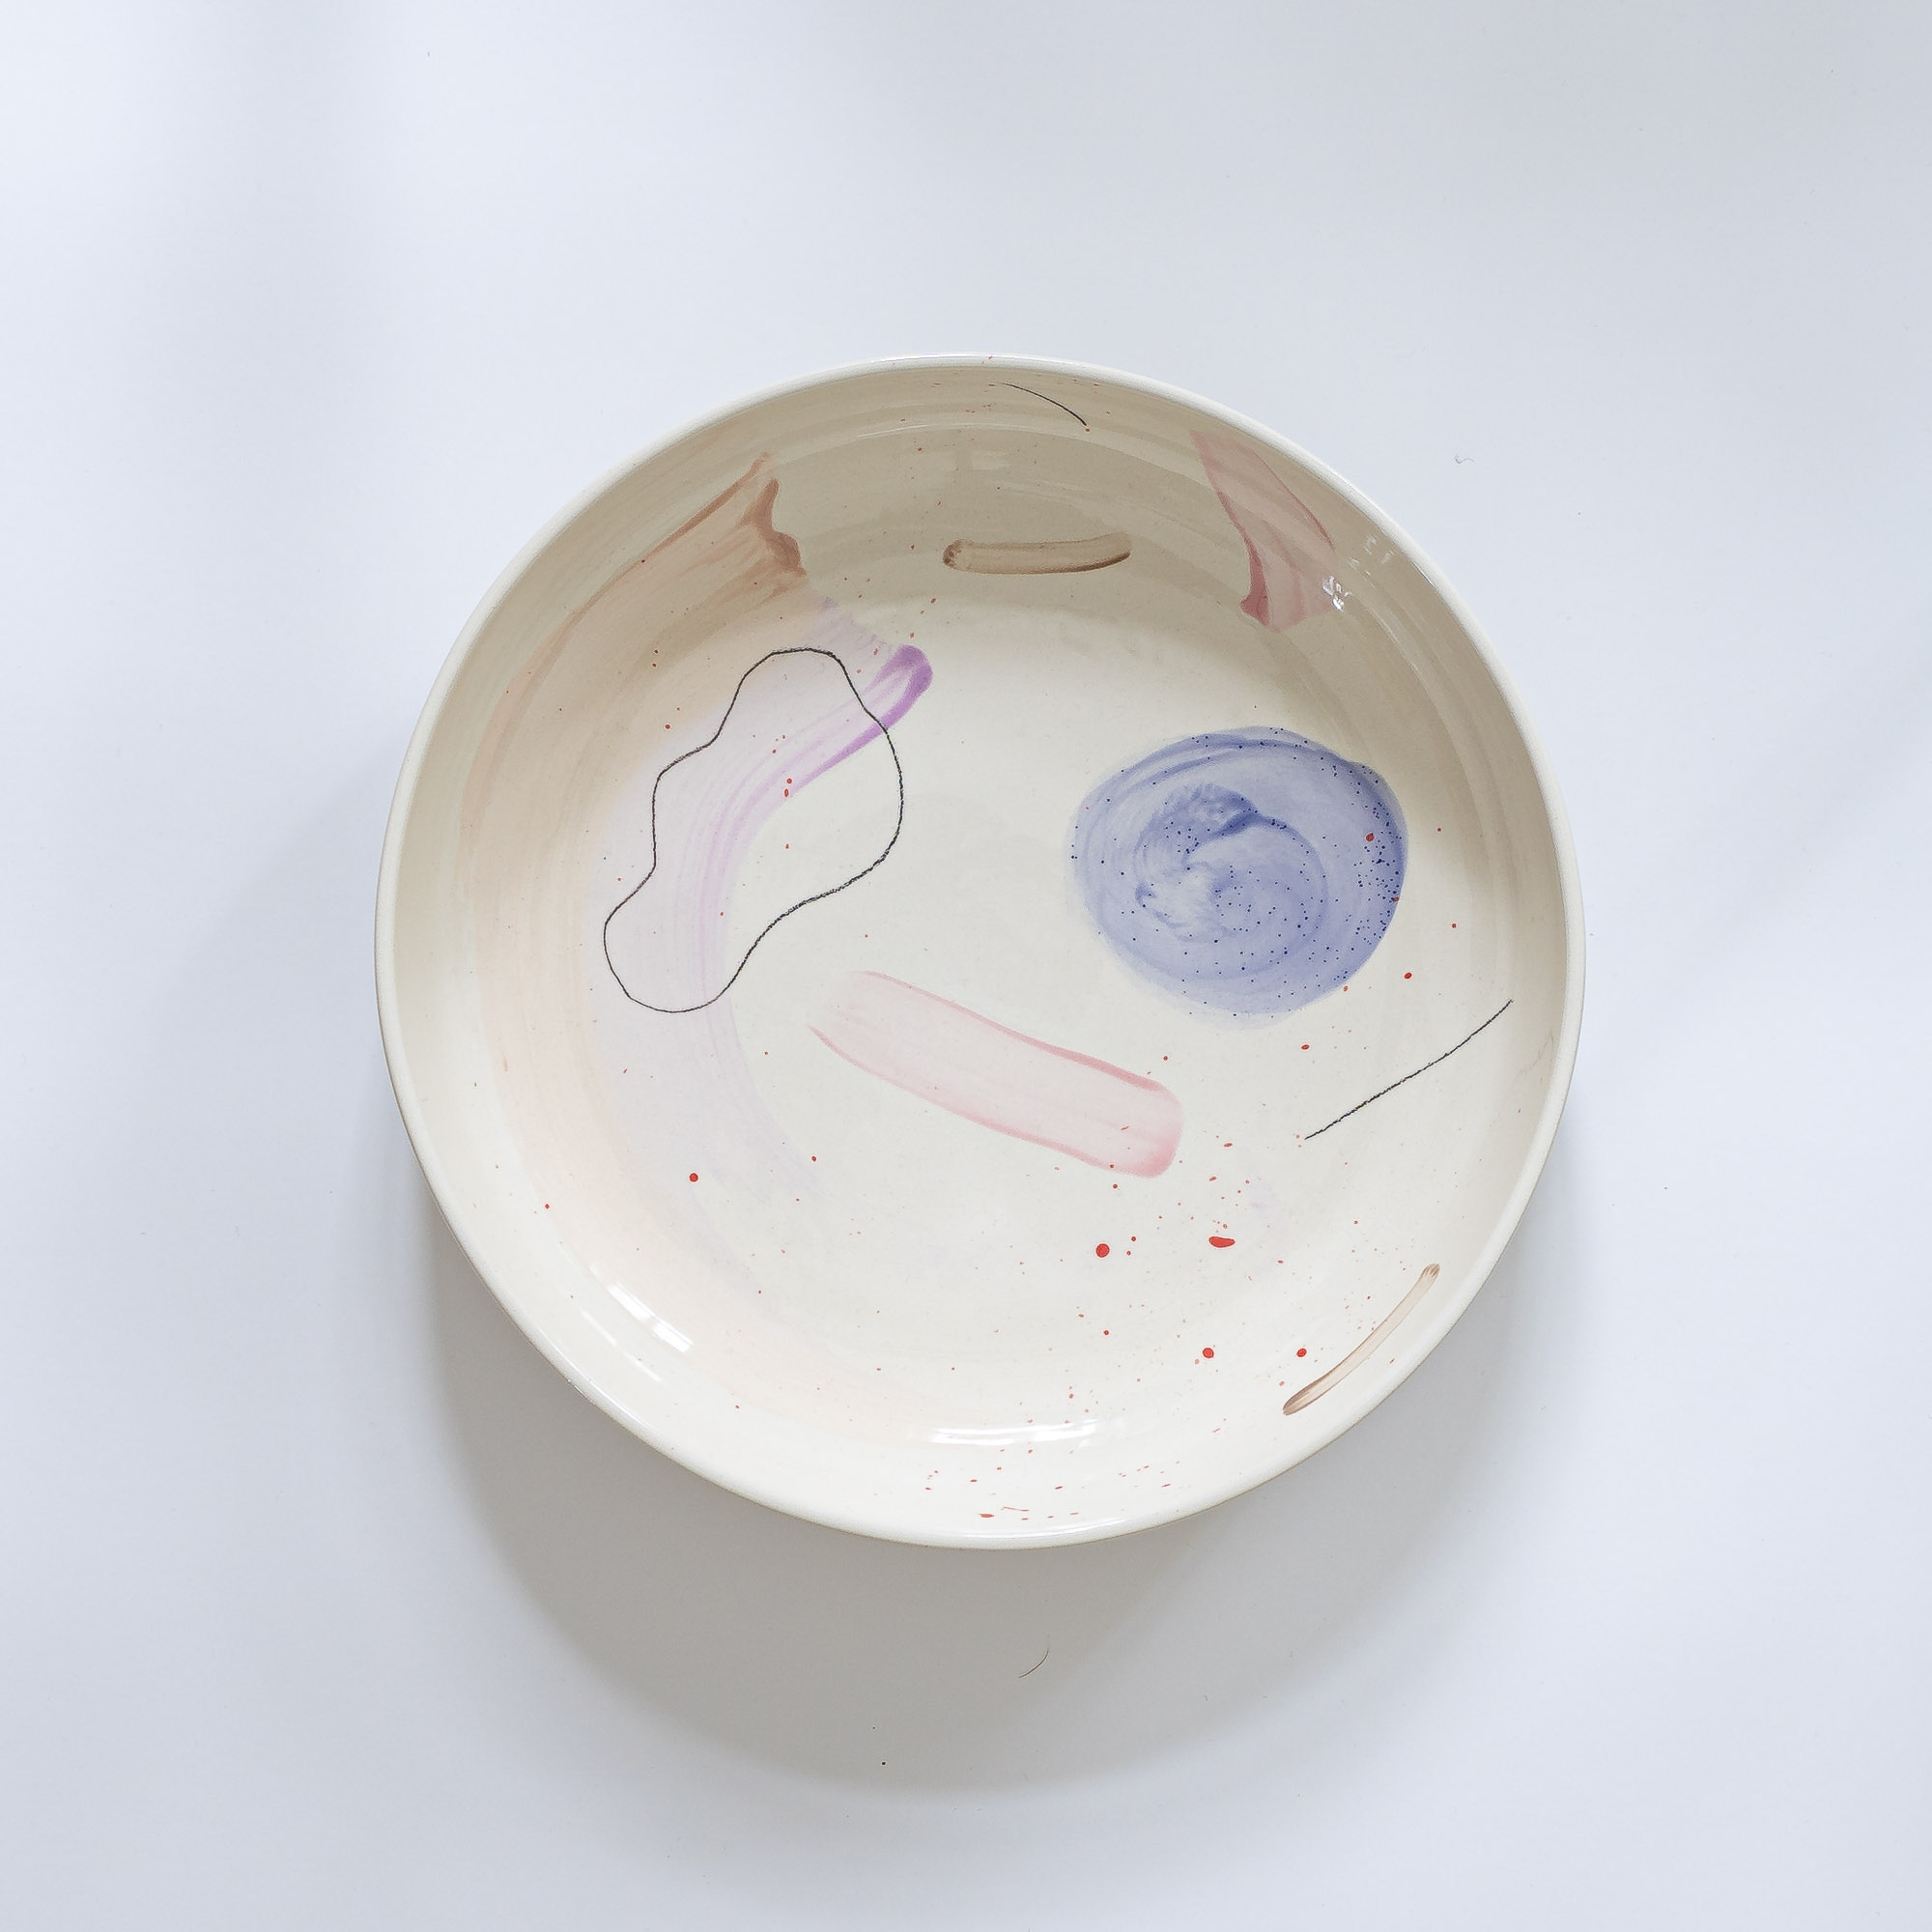 nicenicenice keramik00016